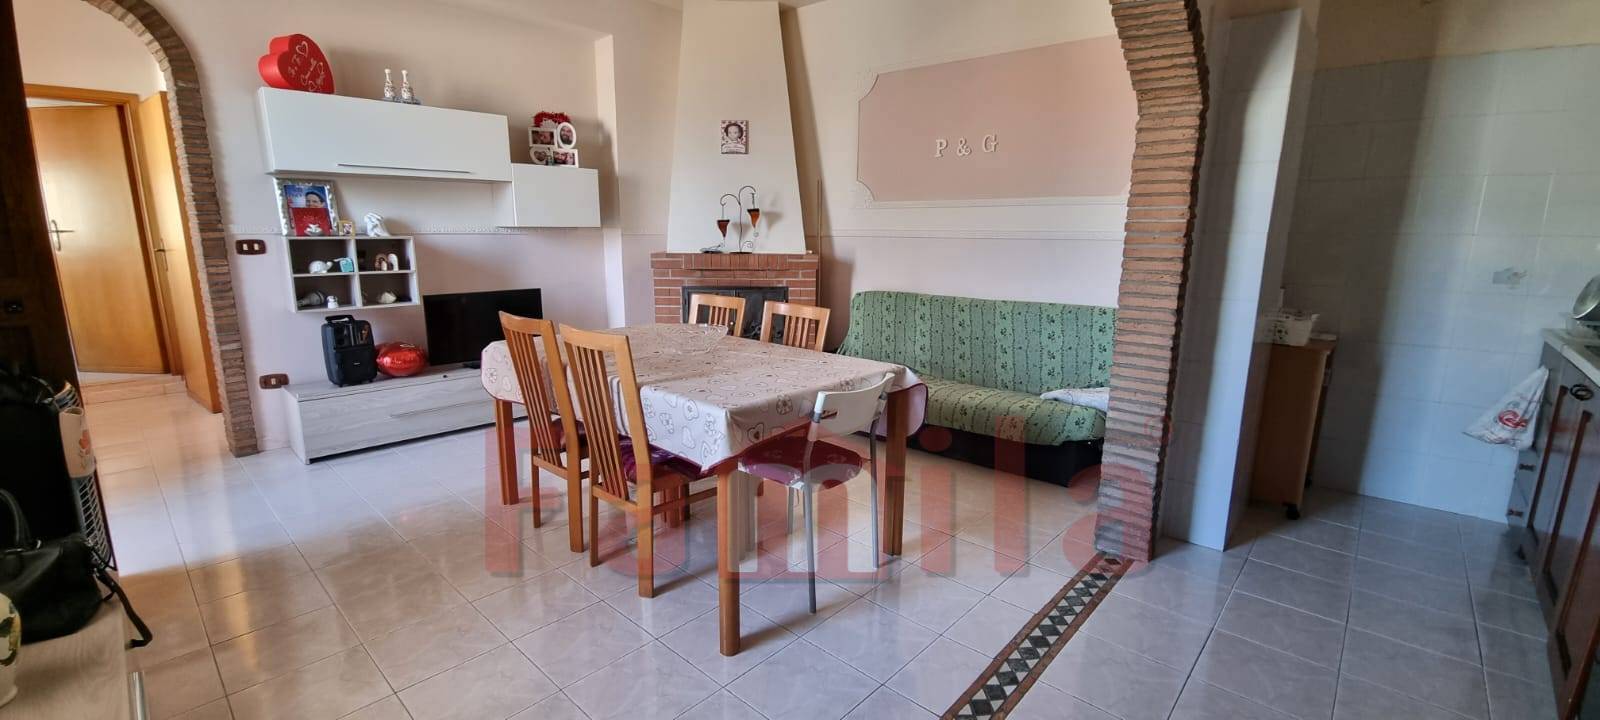 Appartamento in vendita a Sirignano, 2 locali, prezzo € 34.000 | CambioCasa.it